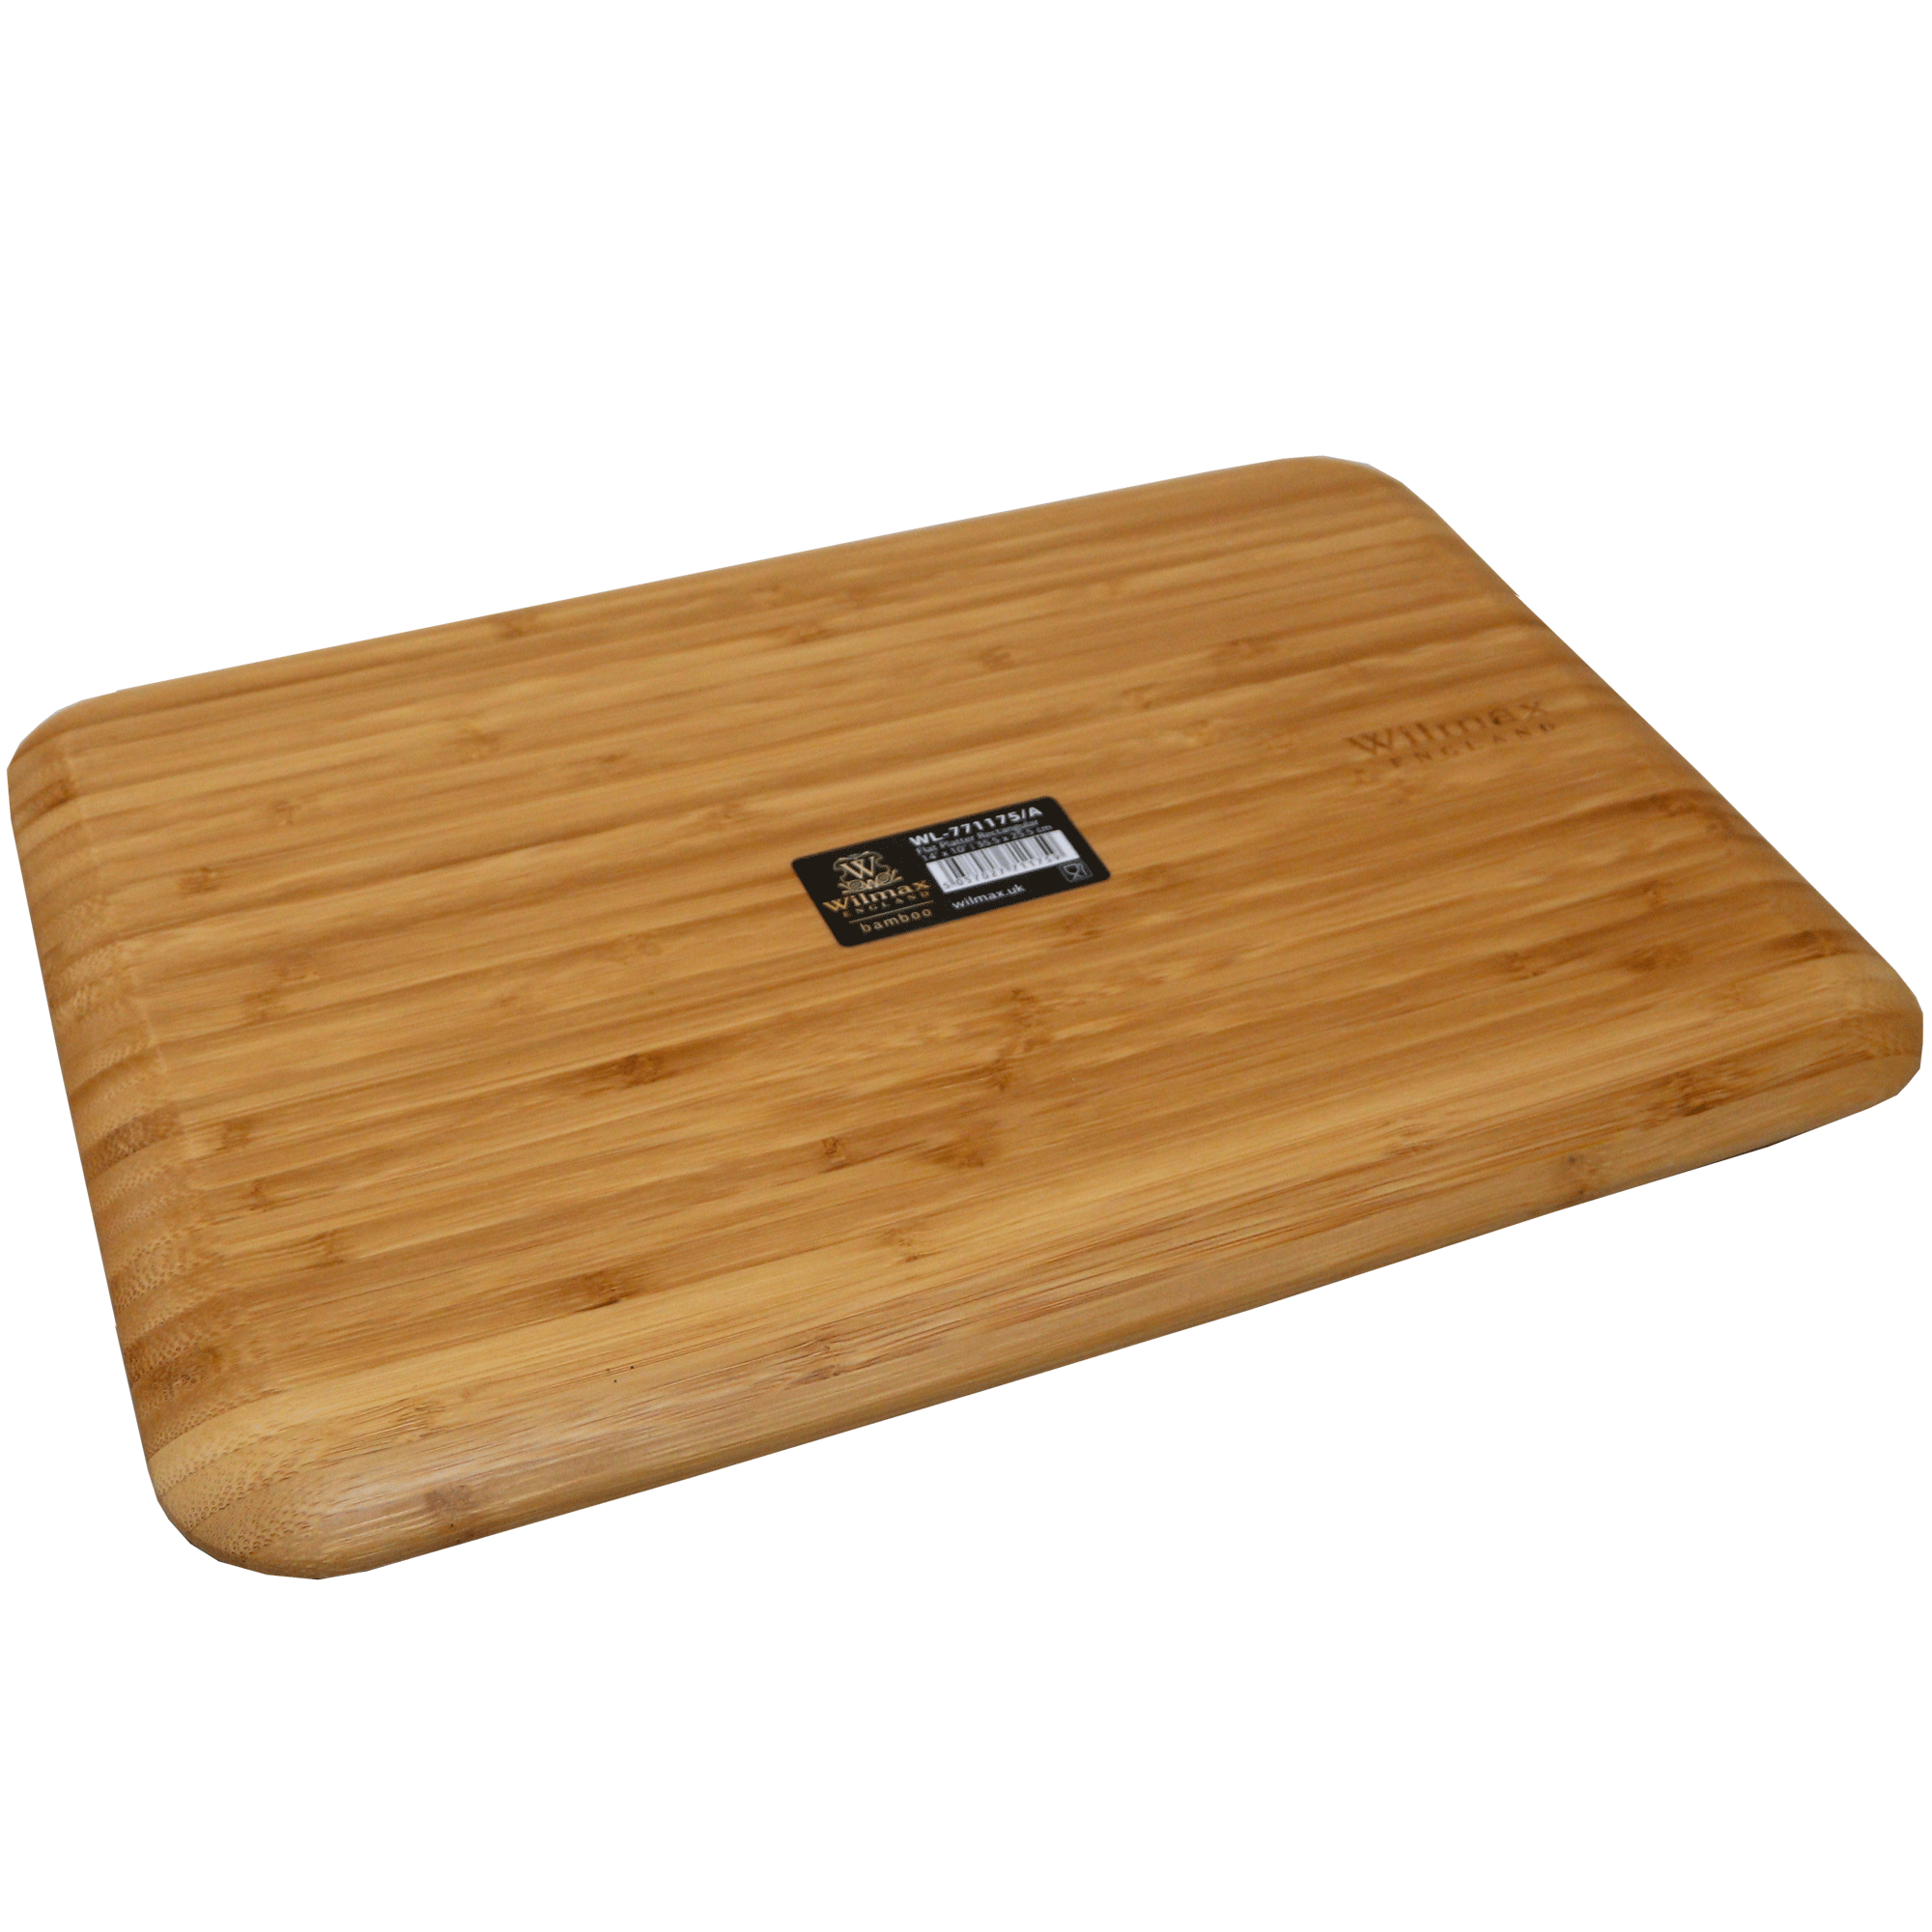 Flat Platter Rectangular Wilmax 771175/A  7567-3 